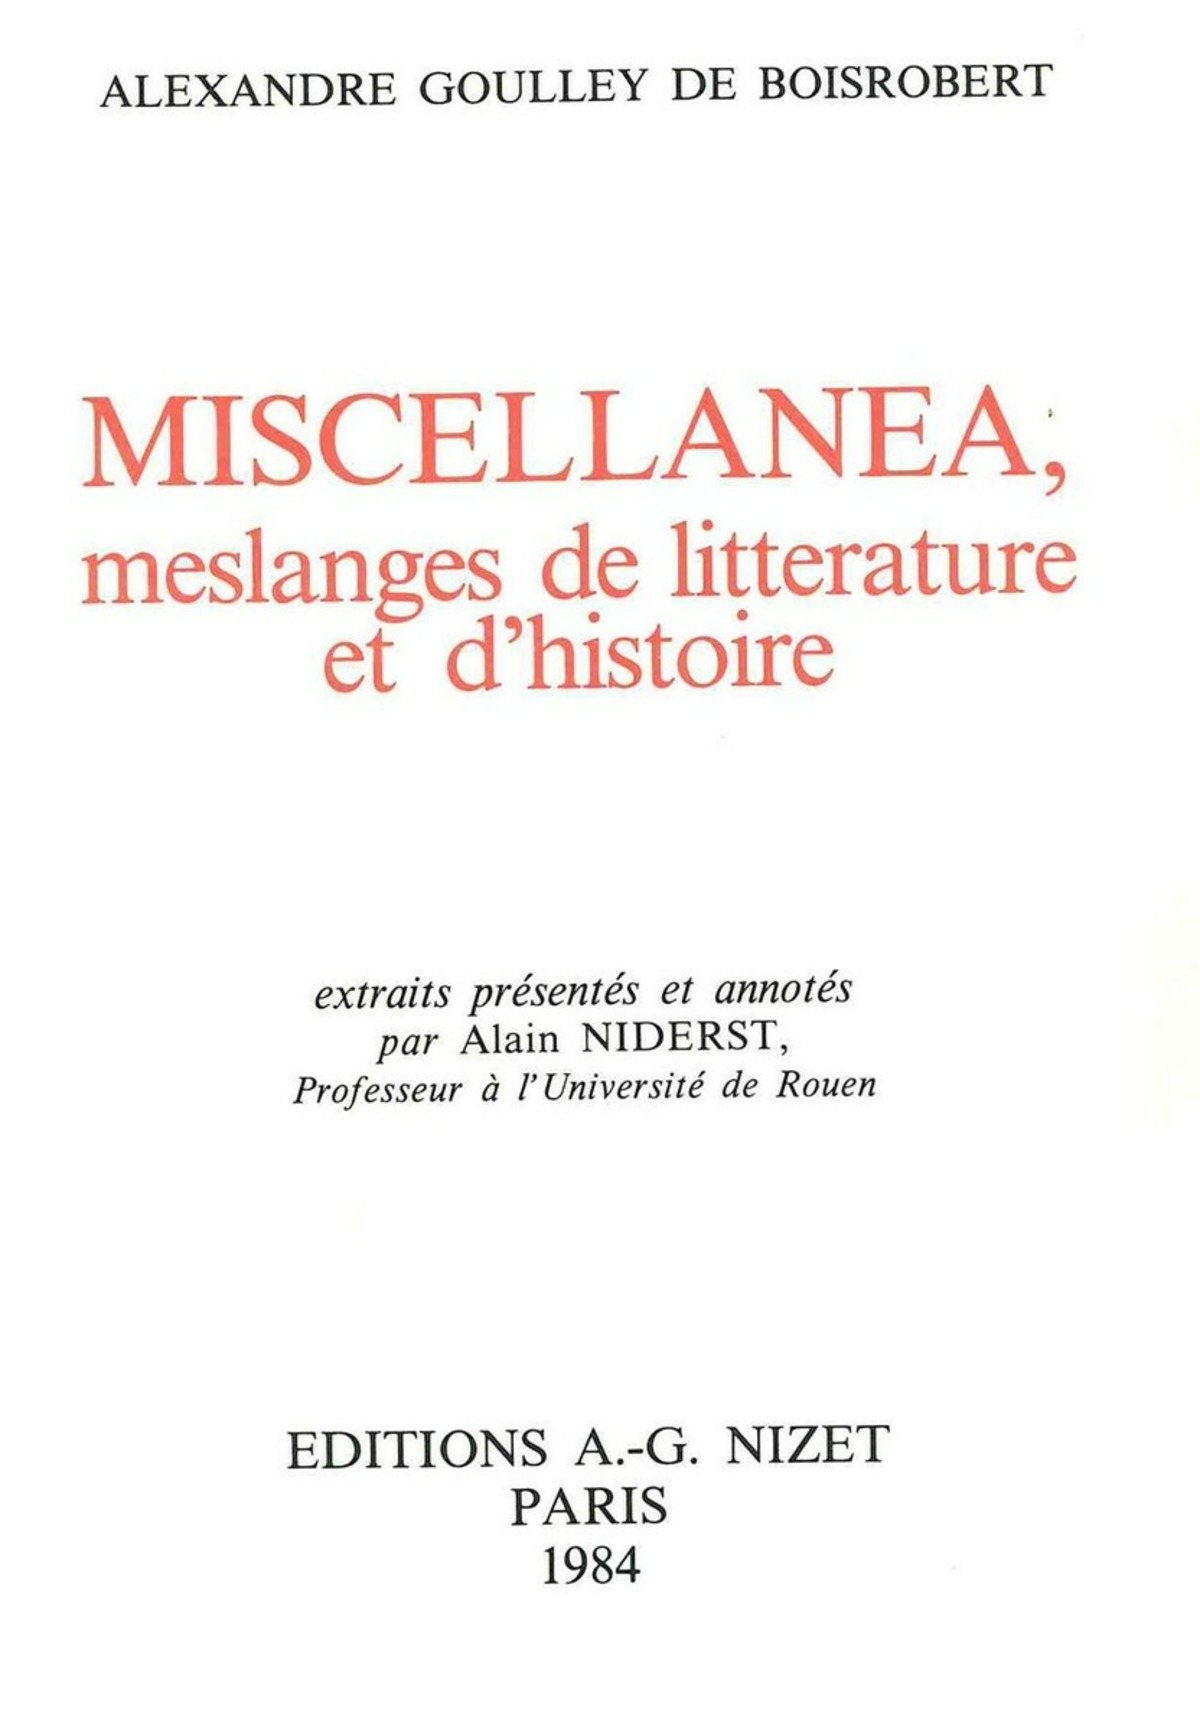 Miscellanea, meslanges de litterature et d'histoire